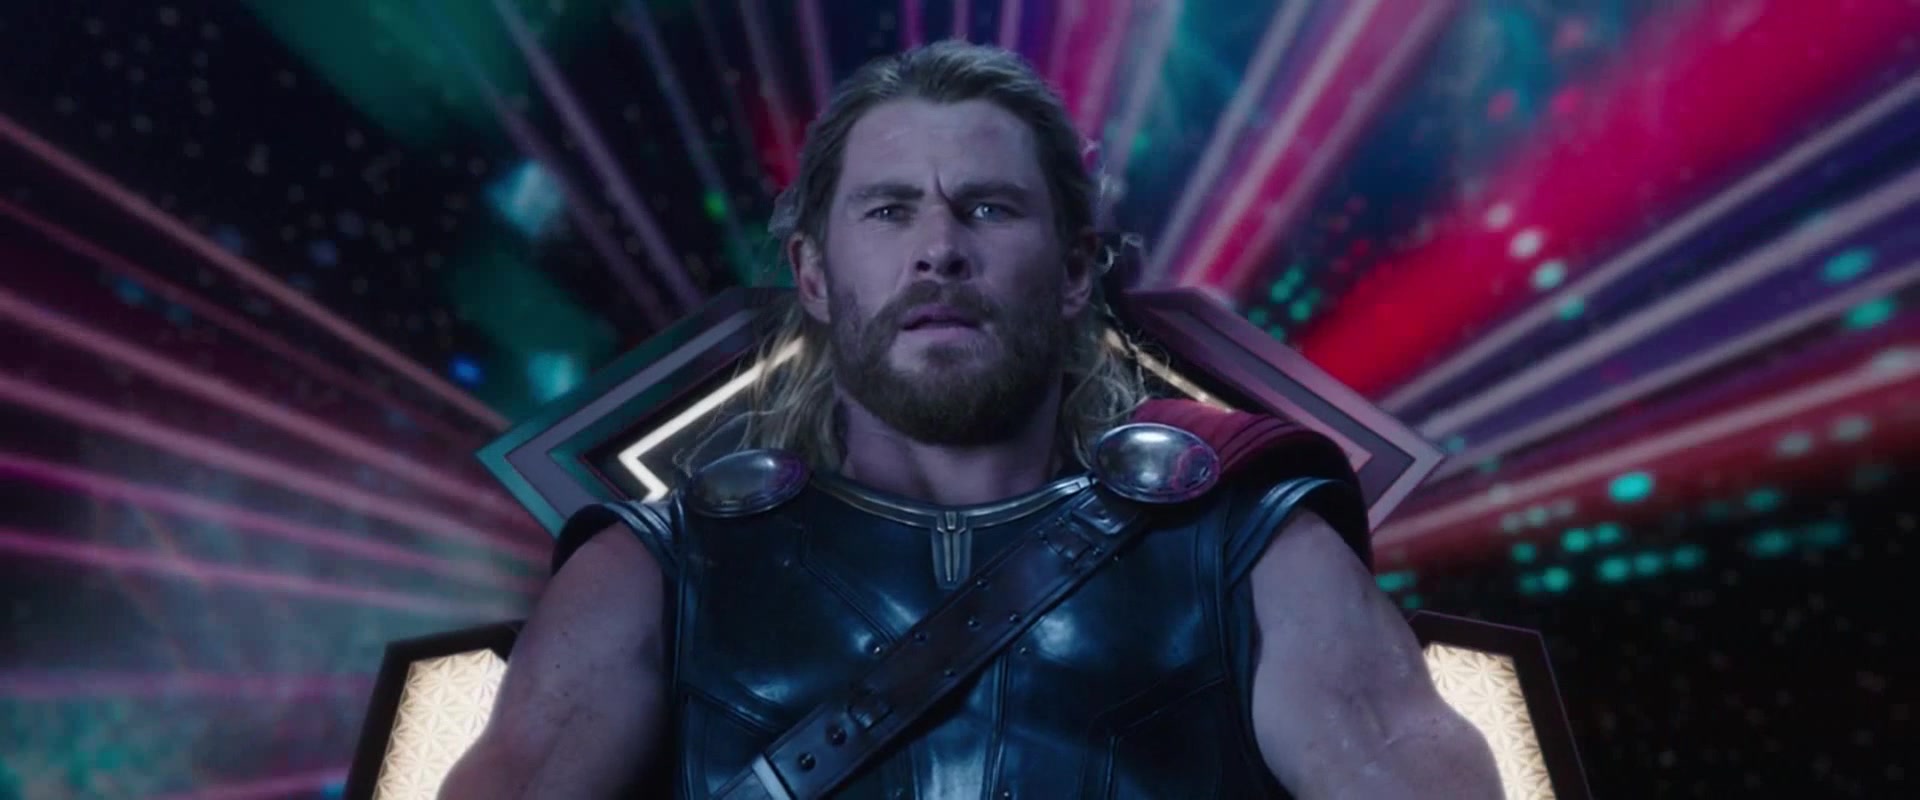 Thor (Chris Hemsworth) is welcomed to Sakaar in Thor: Ragnarok (2017), Marvel Entertainment